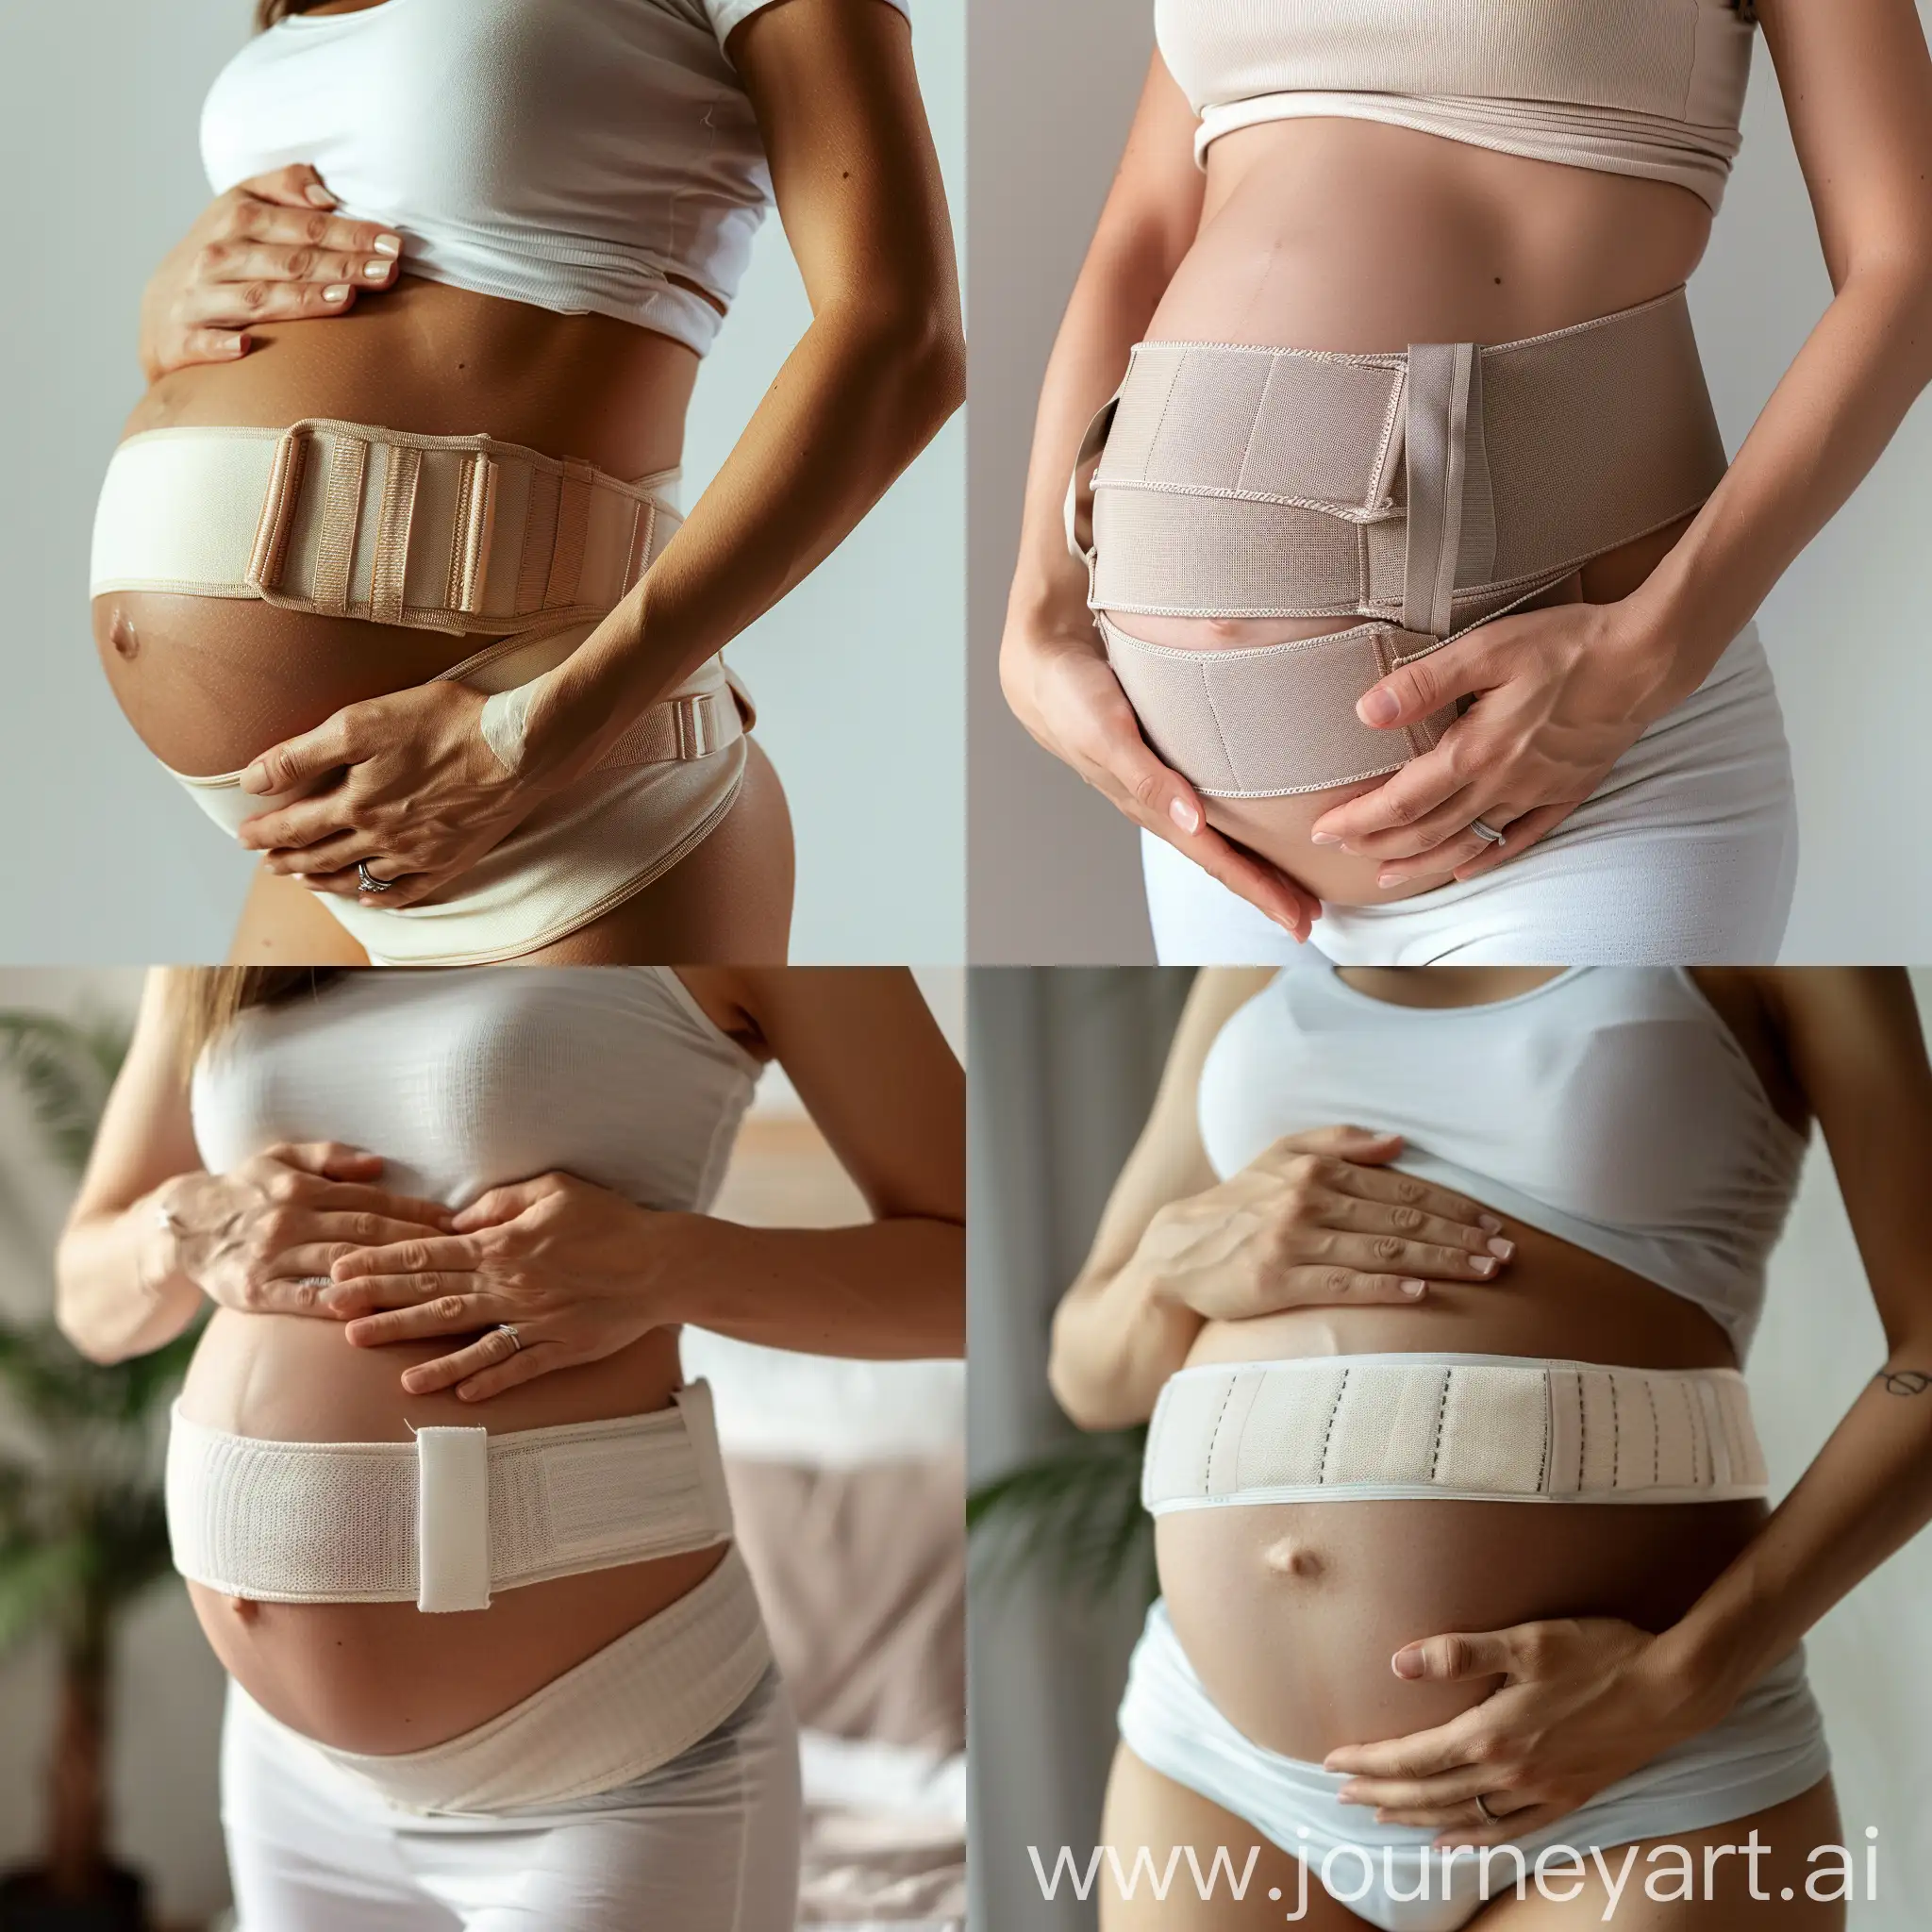 живот беременной женщины в ортопедическом поддерживающем бандаже